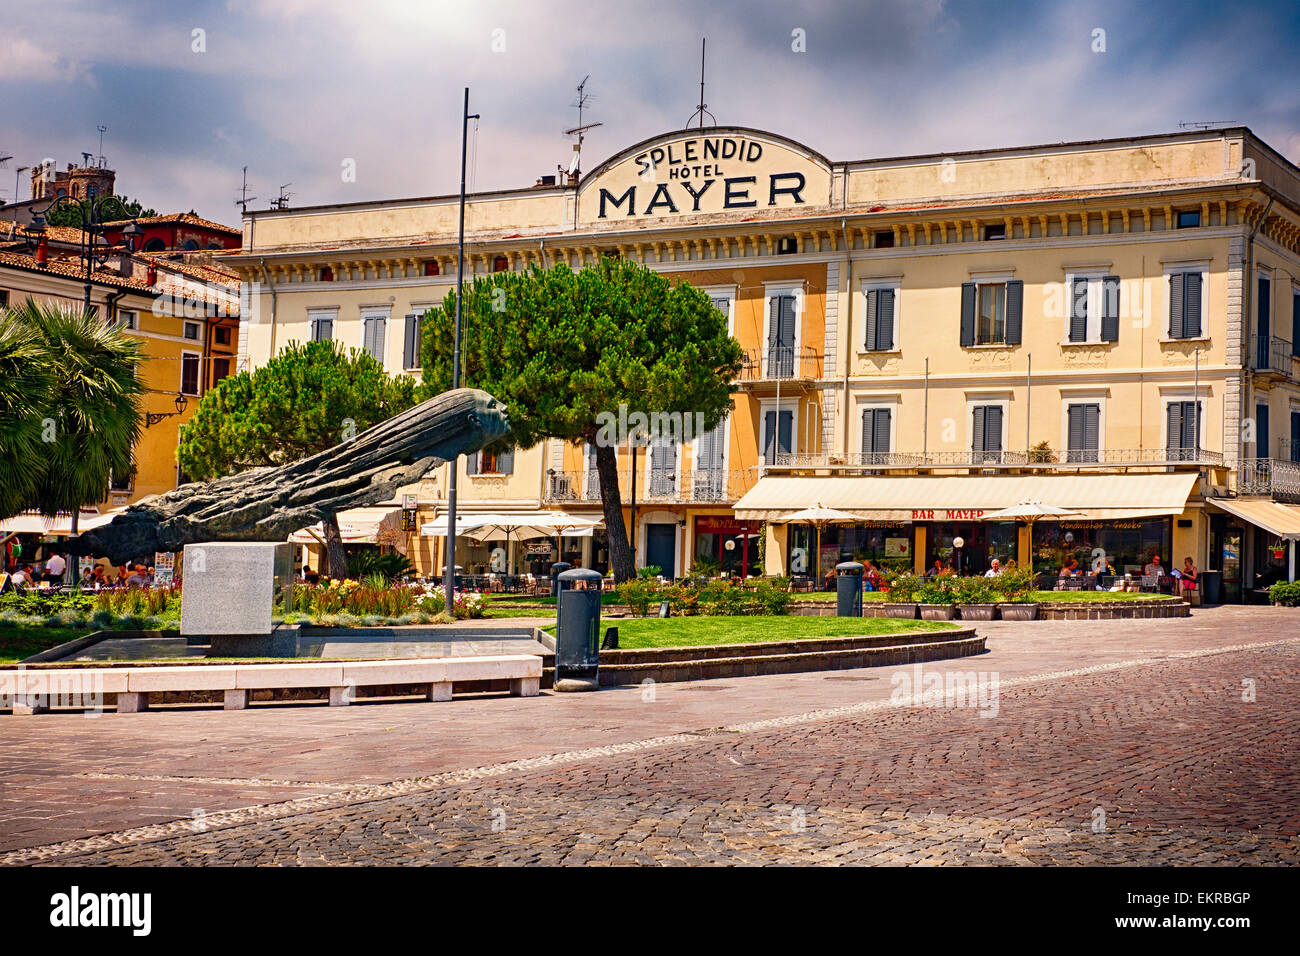 Vue frontale de l'hôtel Mayer et splendide, Desenzano del Garda, Italie Banque D'Images